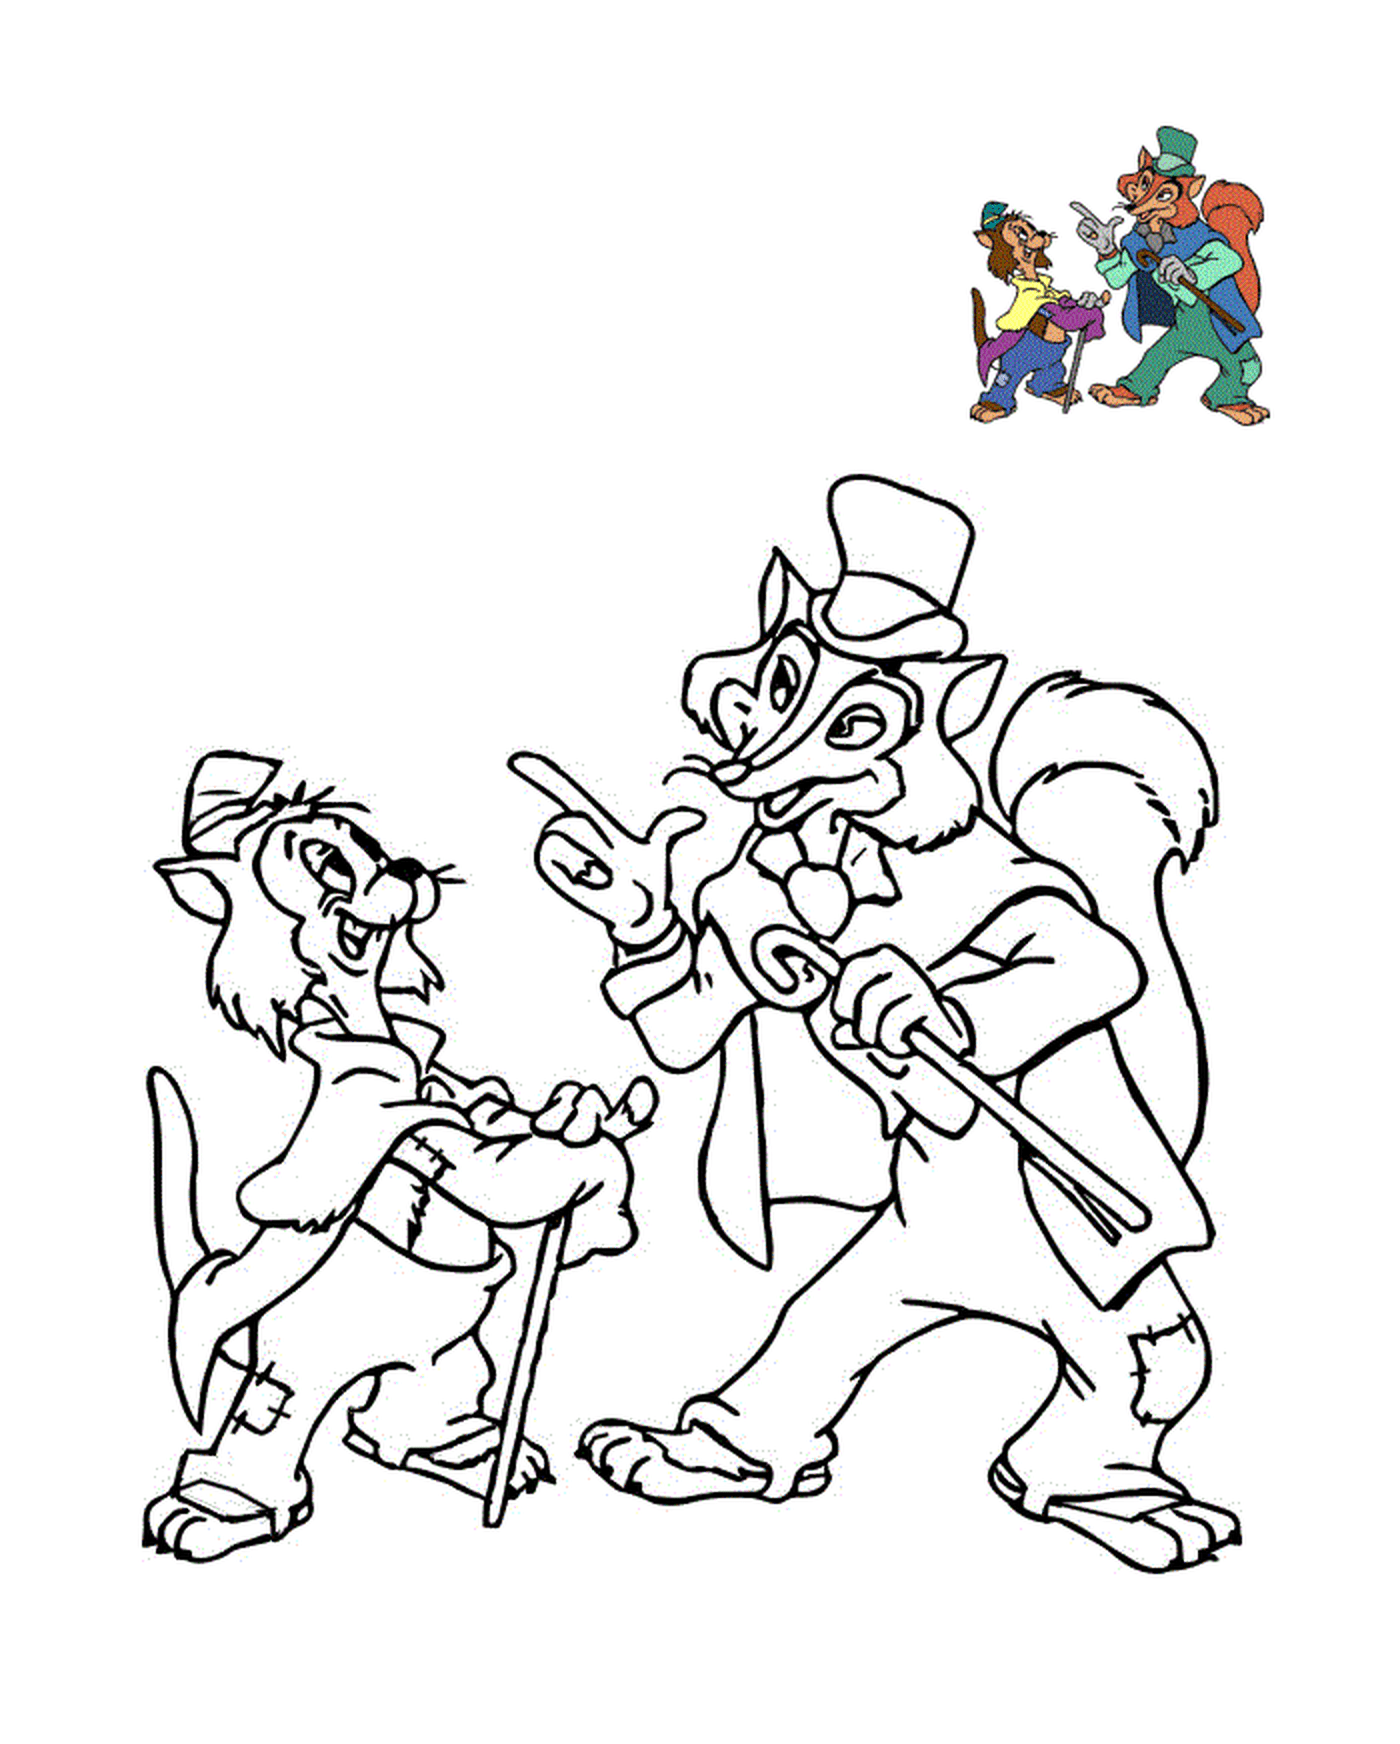  Гидеон и Гранд Кокин, Пиноккио, 1940 год 